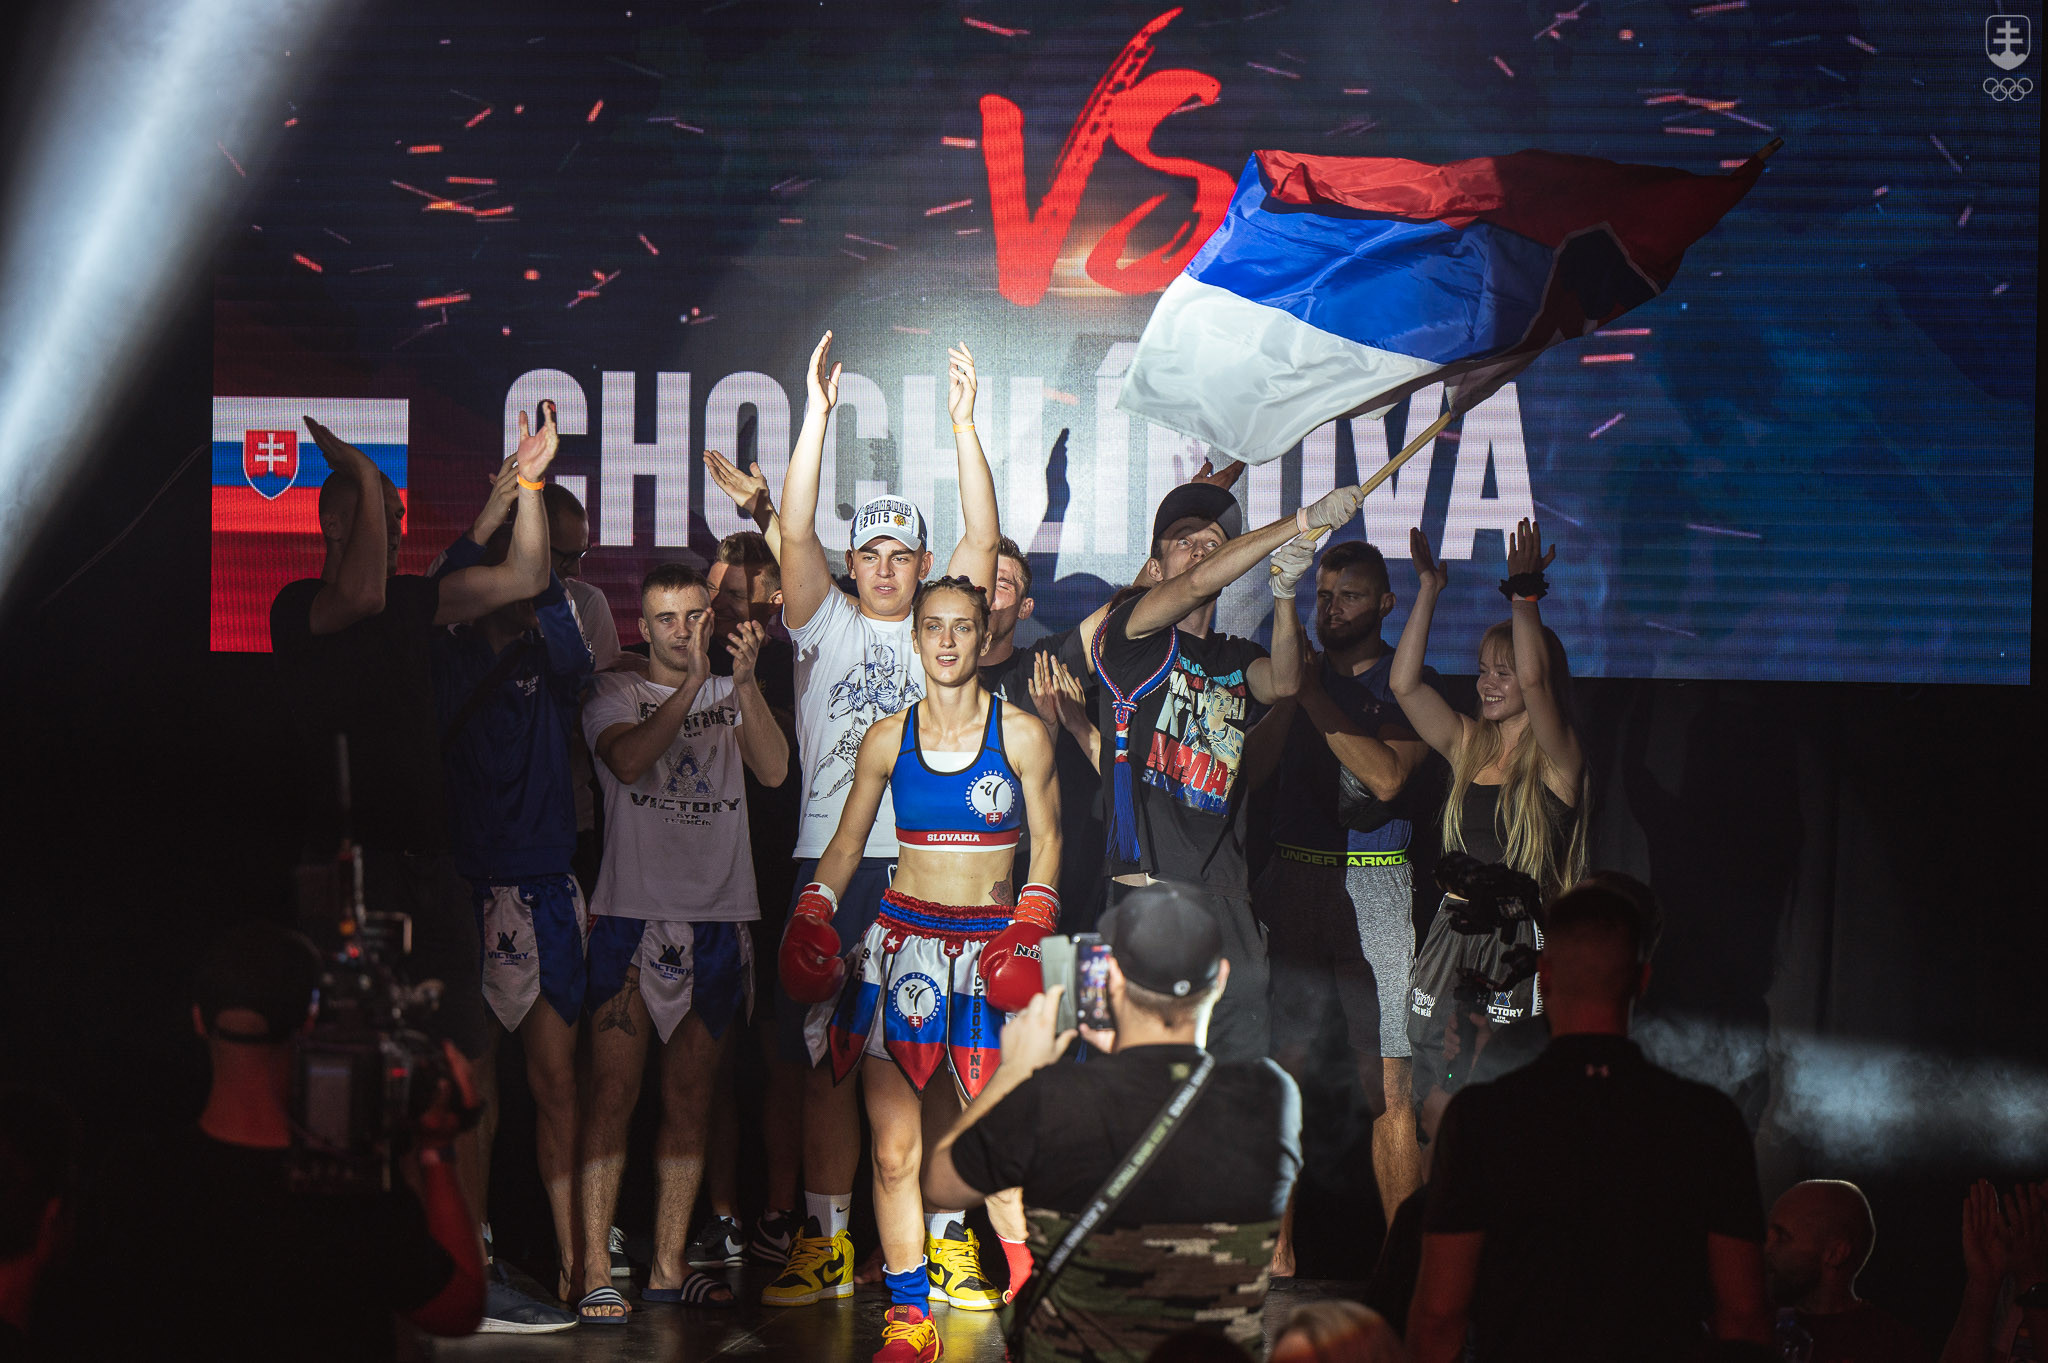 Chochlíková a jej tím pred zápasom o svetový titul WMC, ktorý je považovaný za vrchol v thajskom boxe.